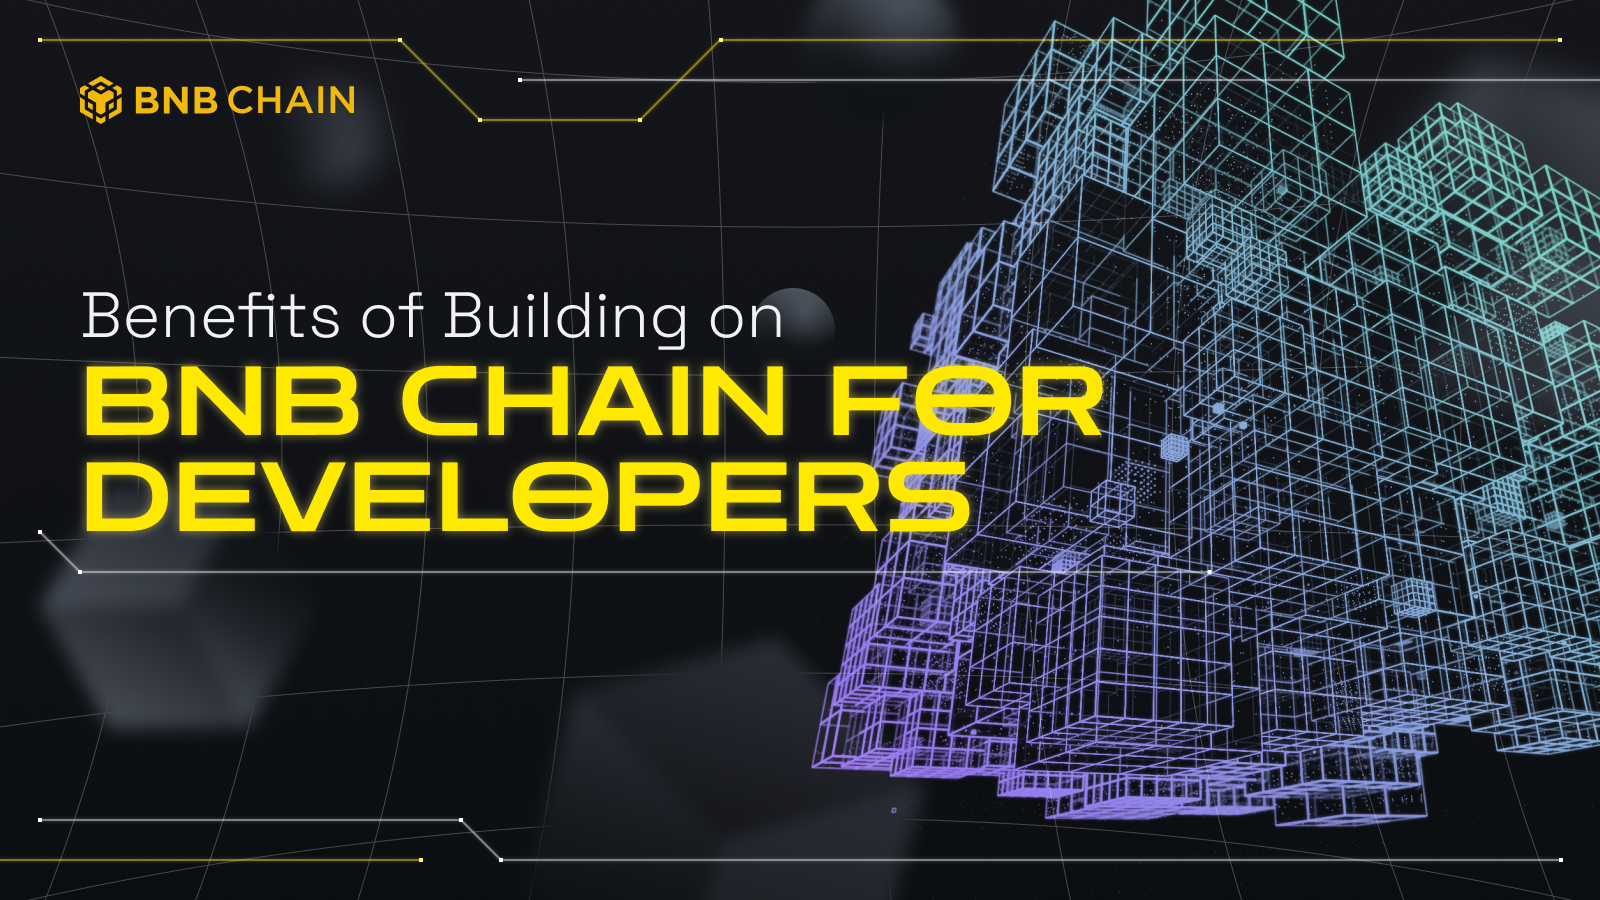 Lợi ích cho các nhà phát triển khi xây dựng trên BNB Chain.